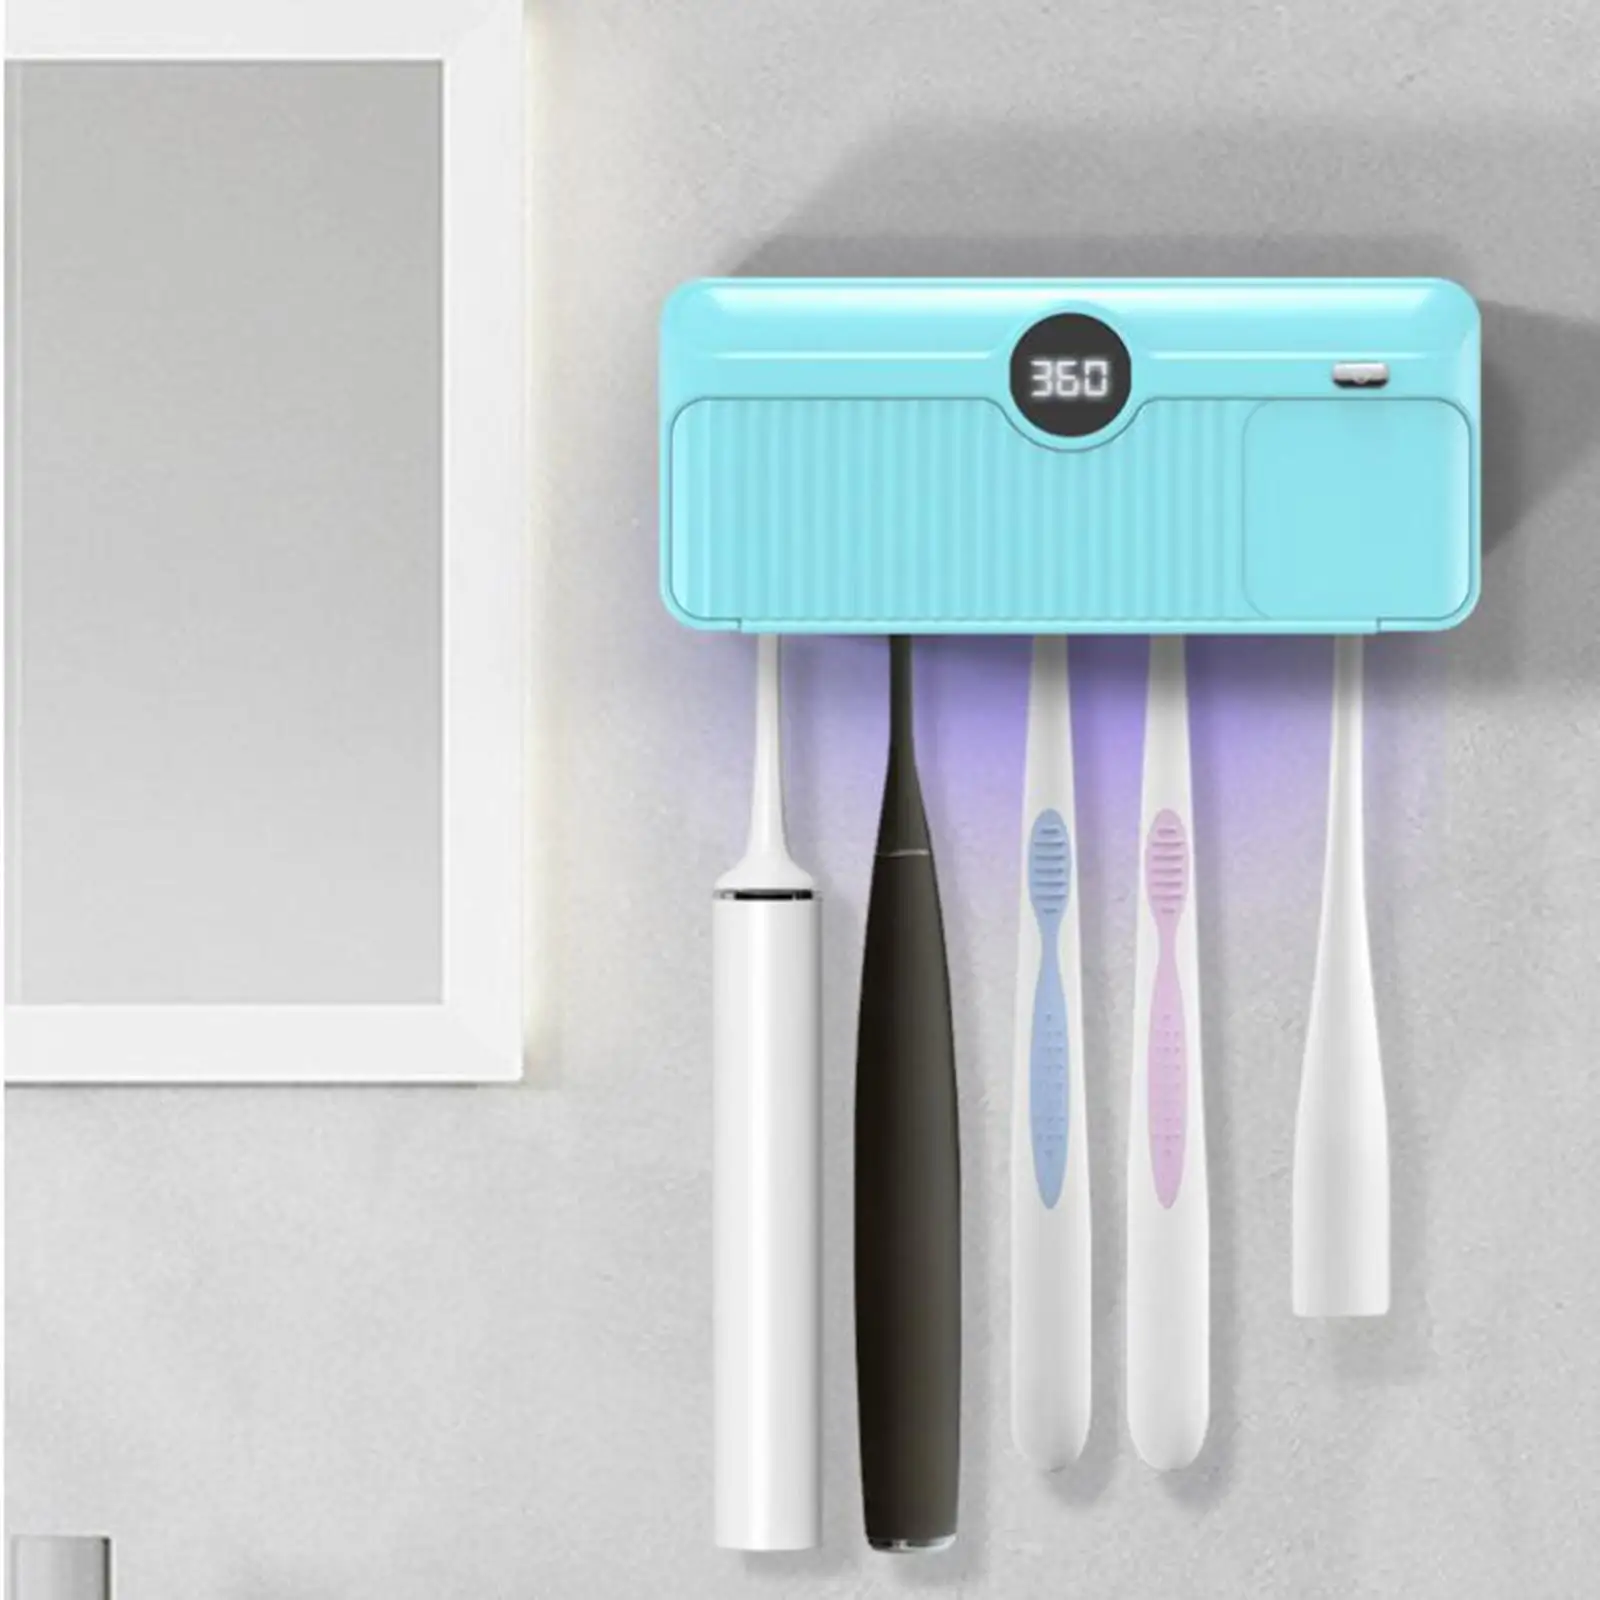 Toothbrush Sterilizer UV Light Toothbrush Holder for Bathroom Family All Toothbrushes